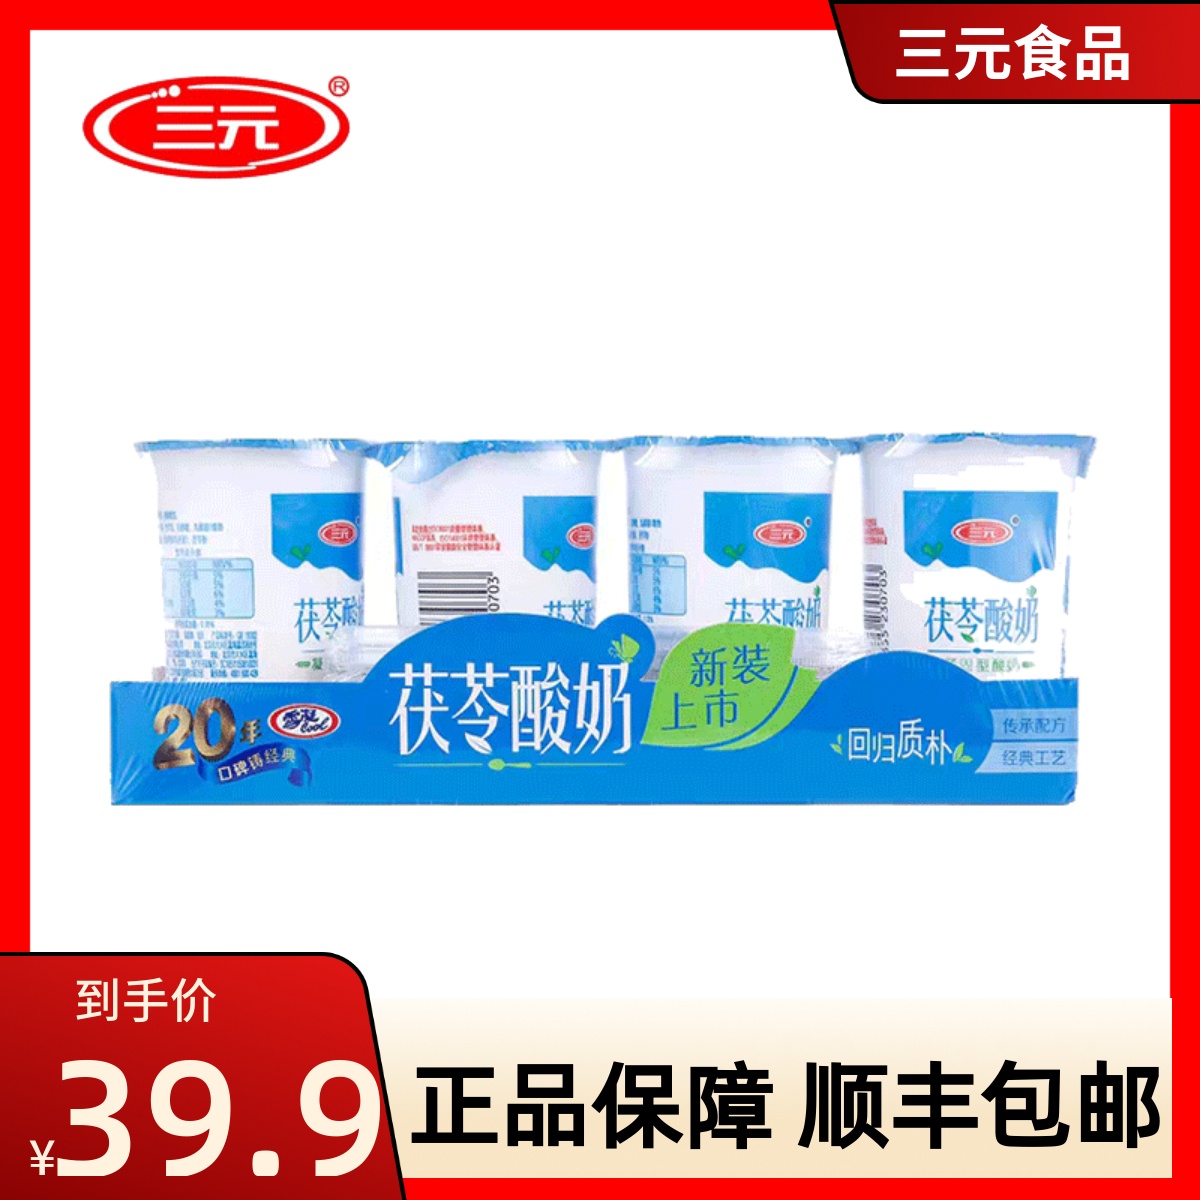 北京三元茯苓酸奶无添加增稠剂老北京风味凝固型酸奶150g*12杯